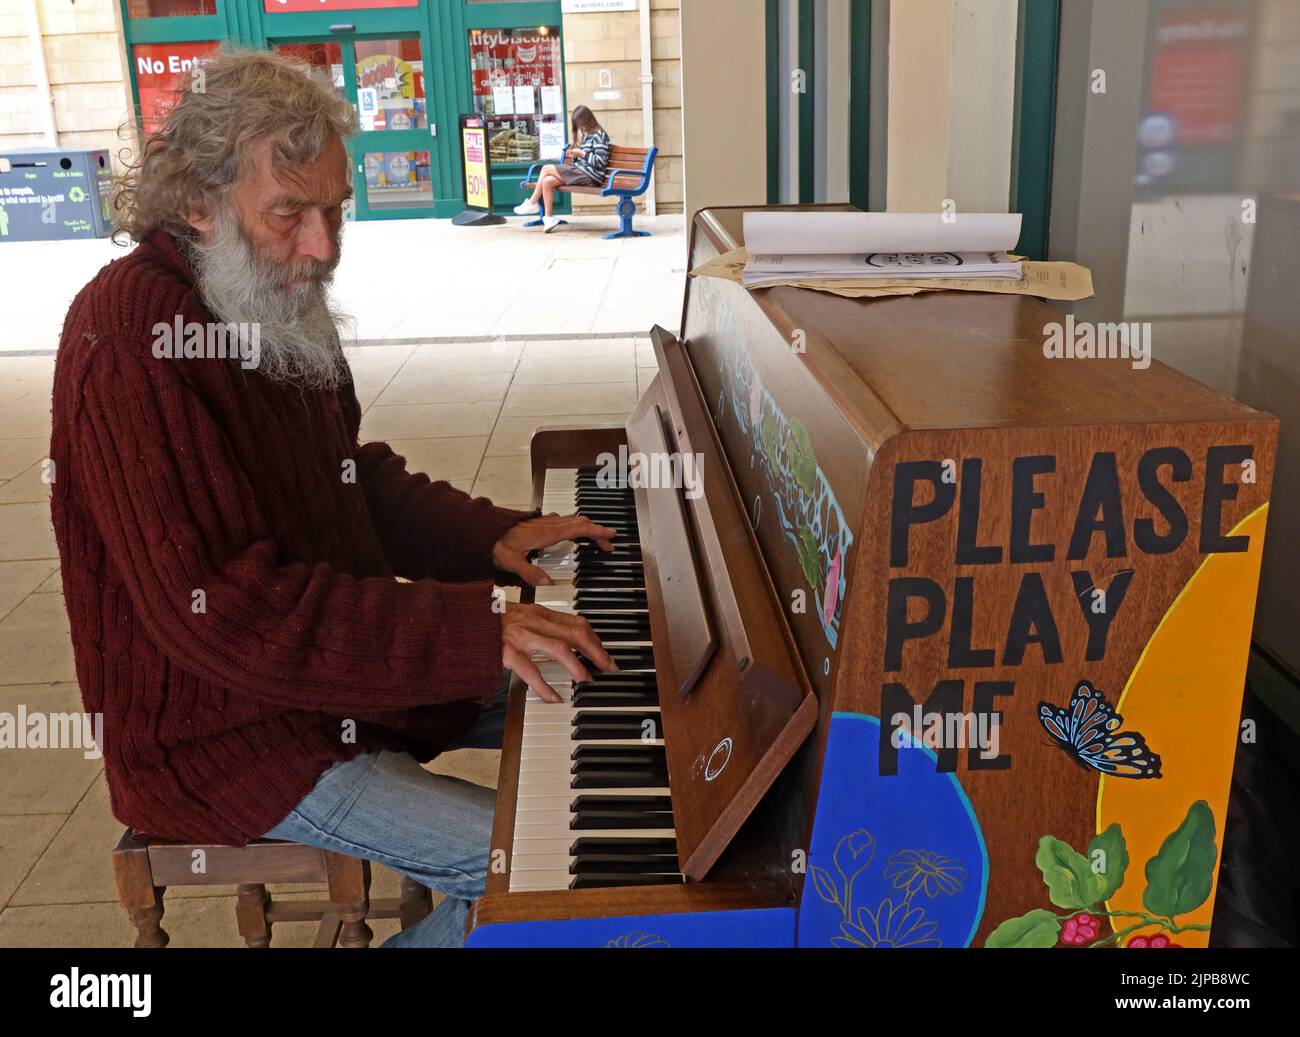 Public Community Piano, fourni pour jouer-Please Play Me, à West Street, Chipping Norton, West Oxfordshire, Oxfordshire, Angleterre du Sud-est, Royaume-Uni, OX7 5LH Banque D'Images